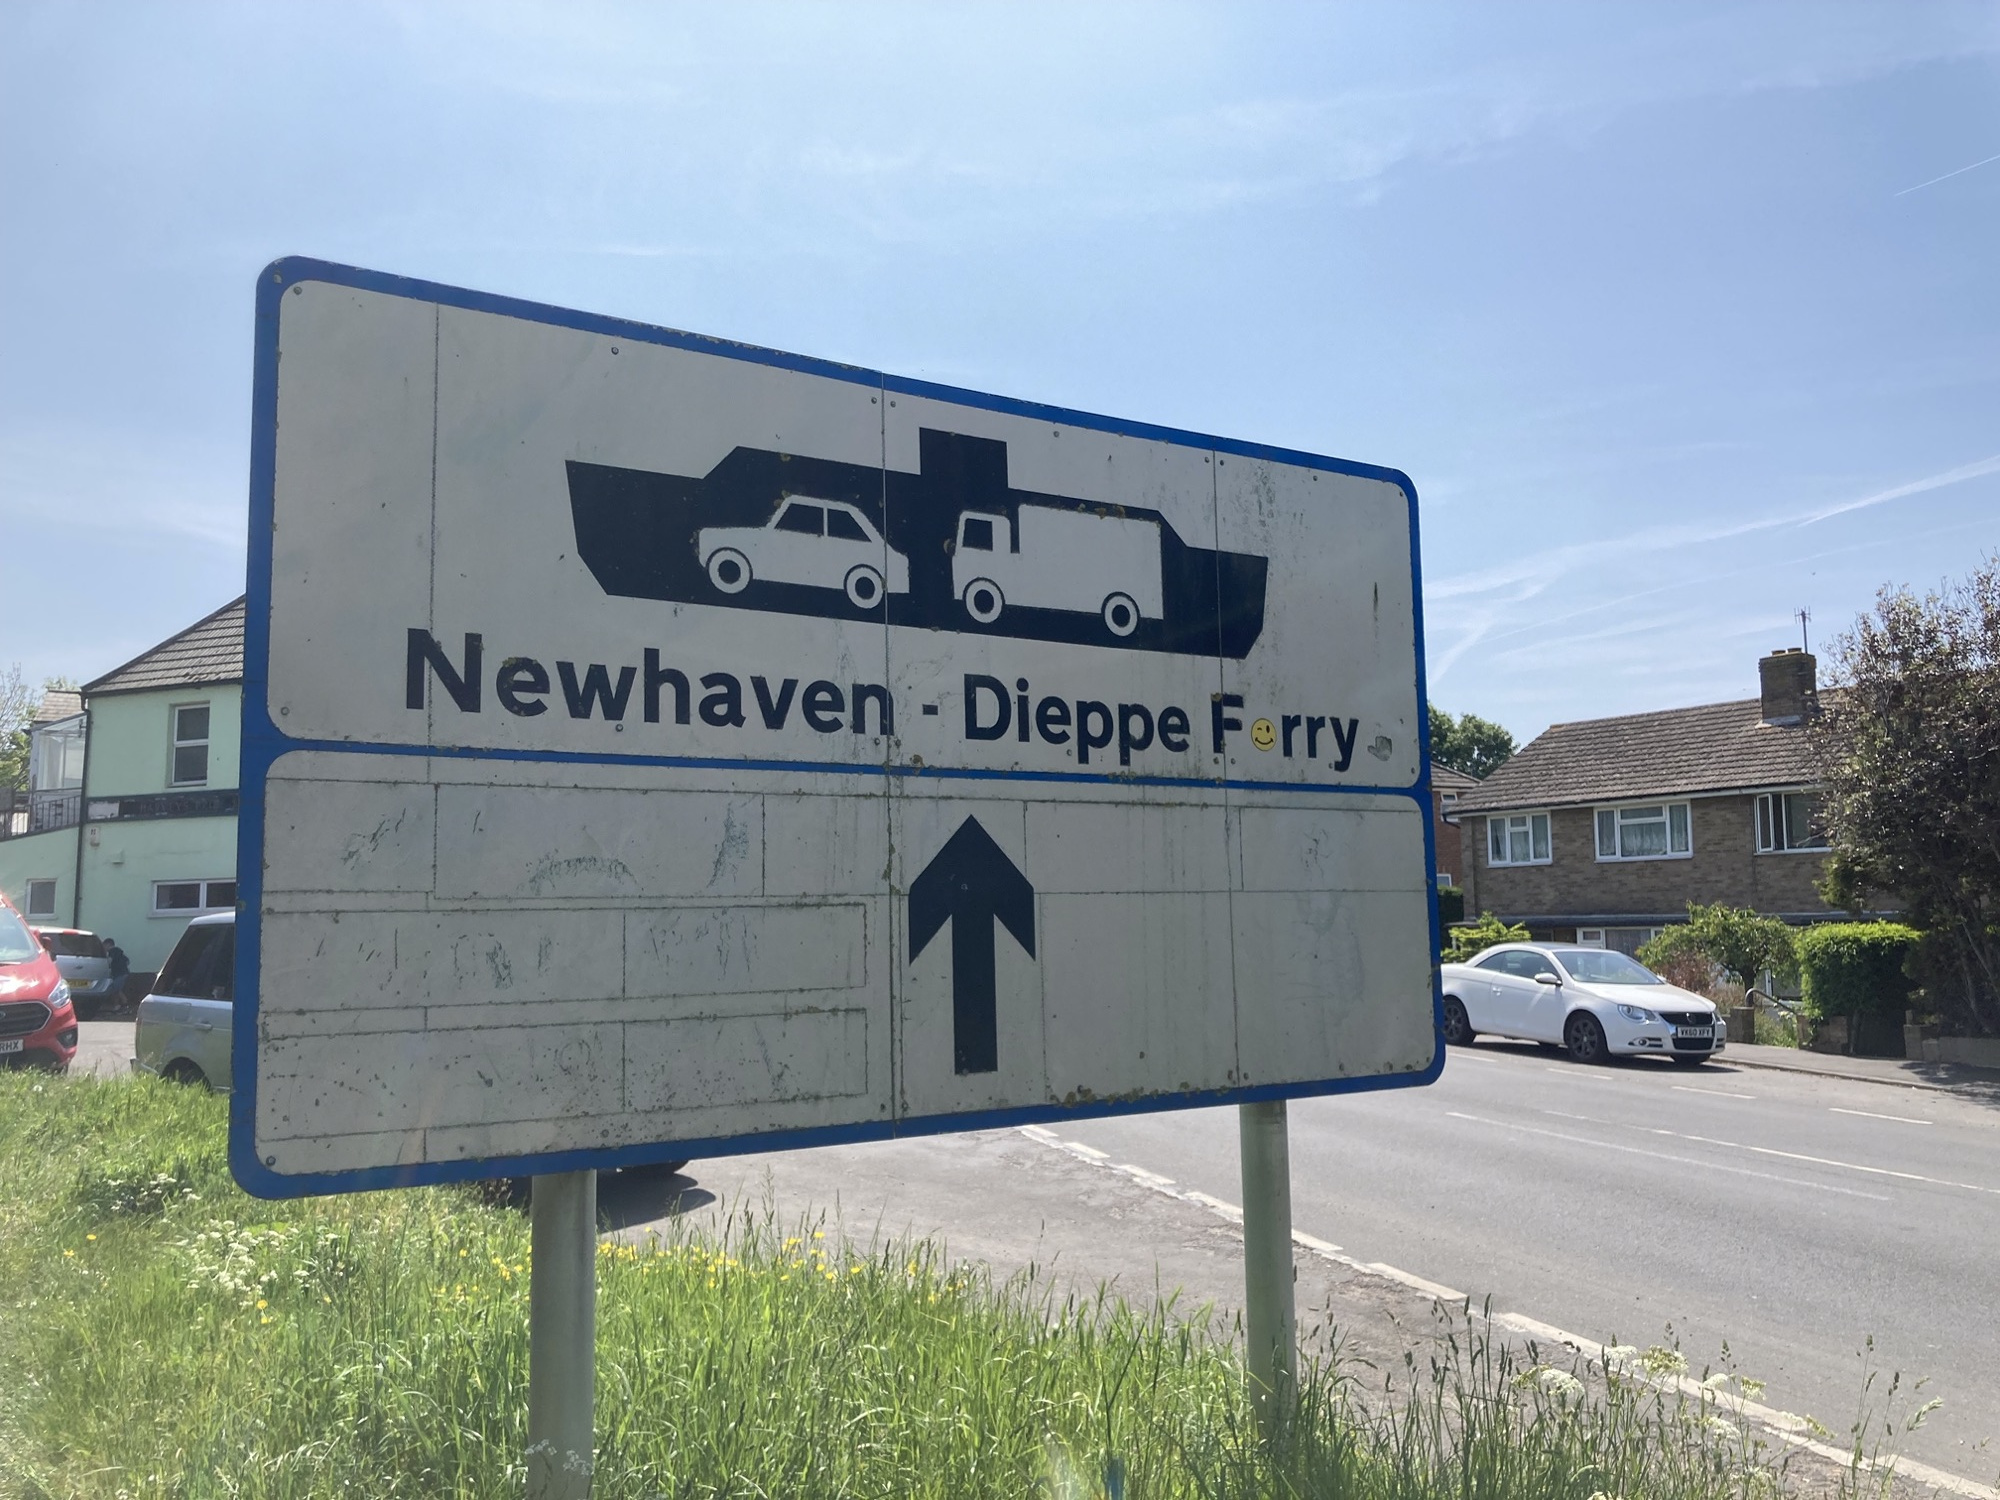 Straßenschild, das die Richtung zur Fähre „Newhaven – Dieppe“ anzeigt, über dem Text ist ein Piktogramm eines Fährschiffes mit einem PKW und einem LKW im Schiffsbauch